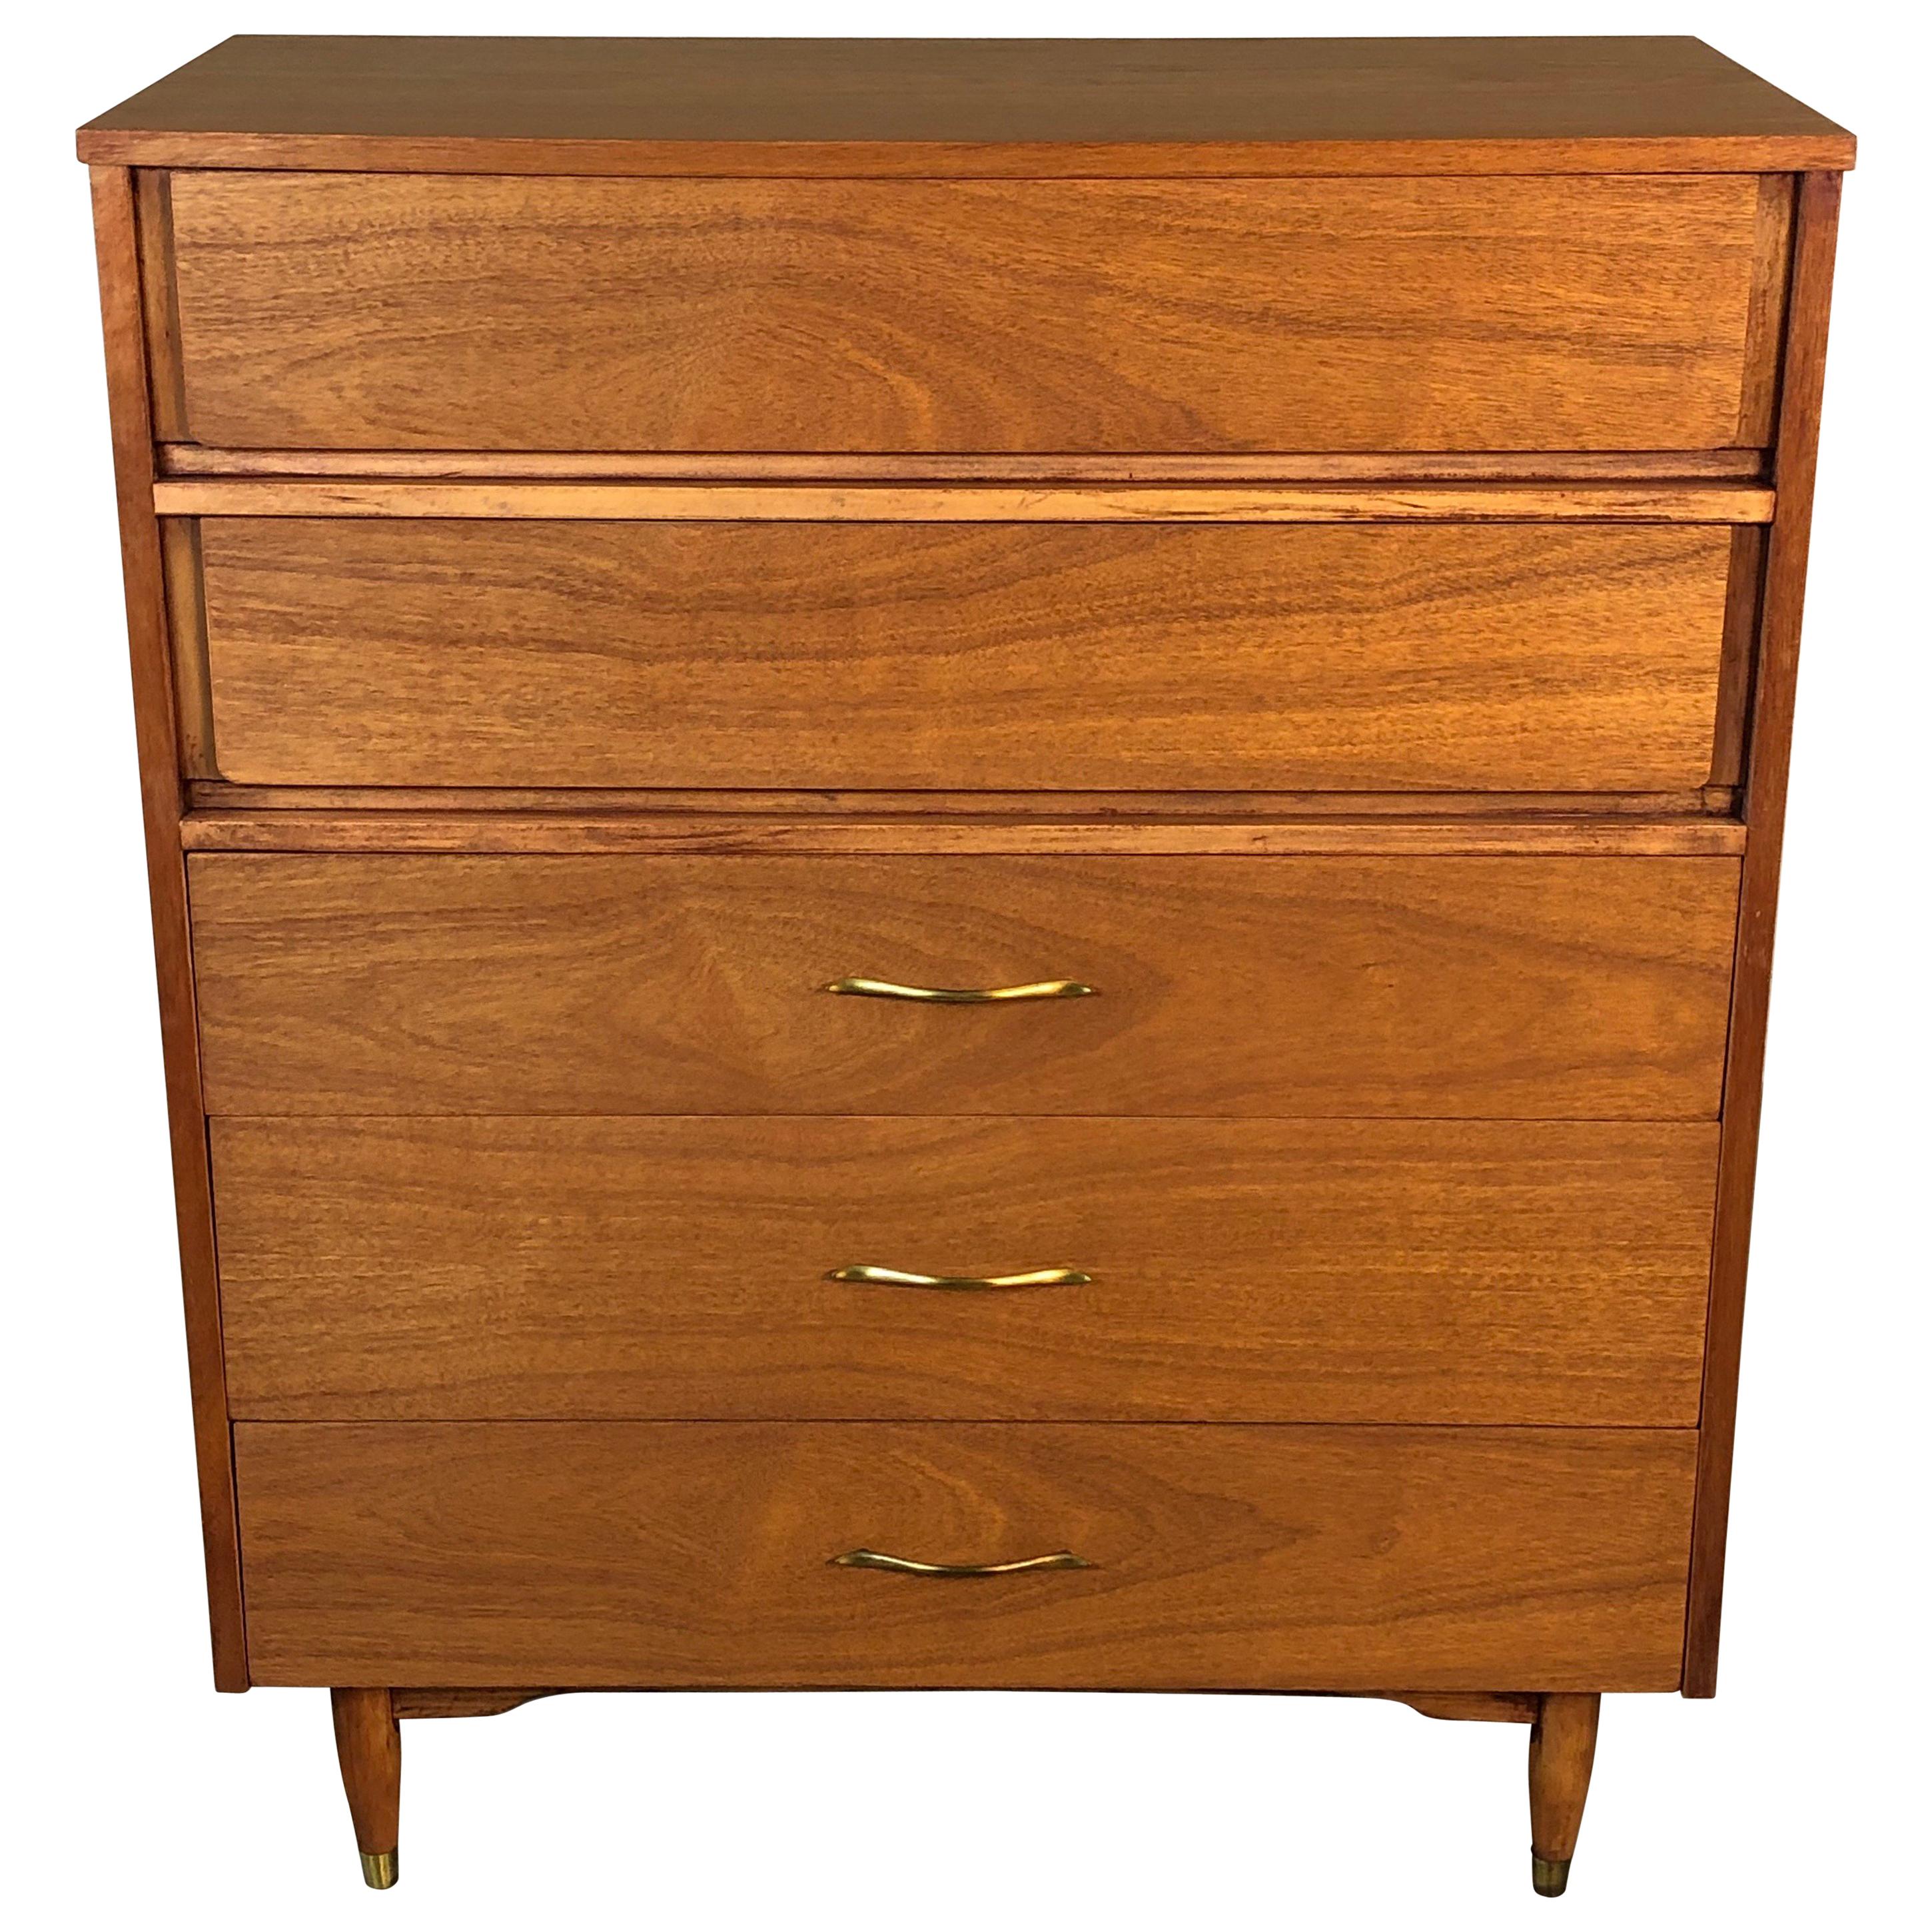 1960s Walnut Wood Dresser by Mainline for Hooker Furniture For Sale